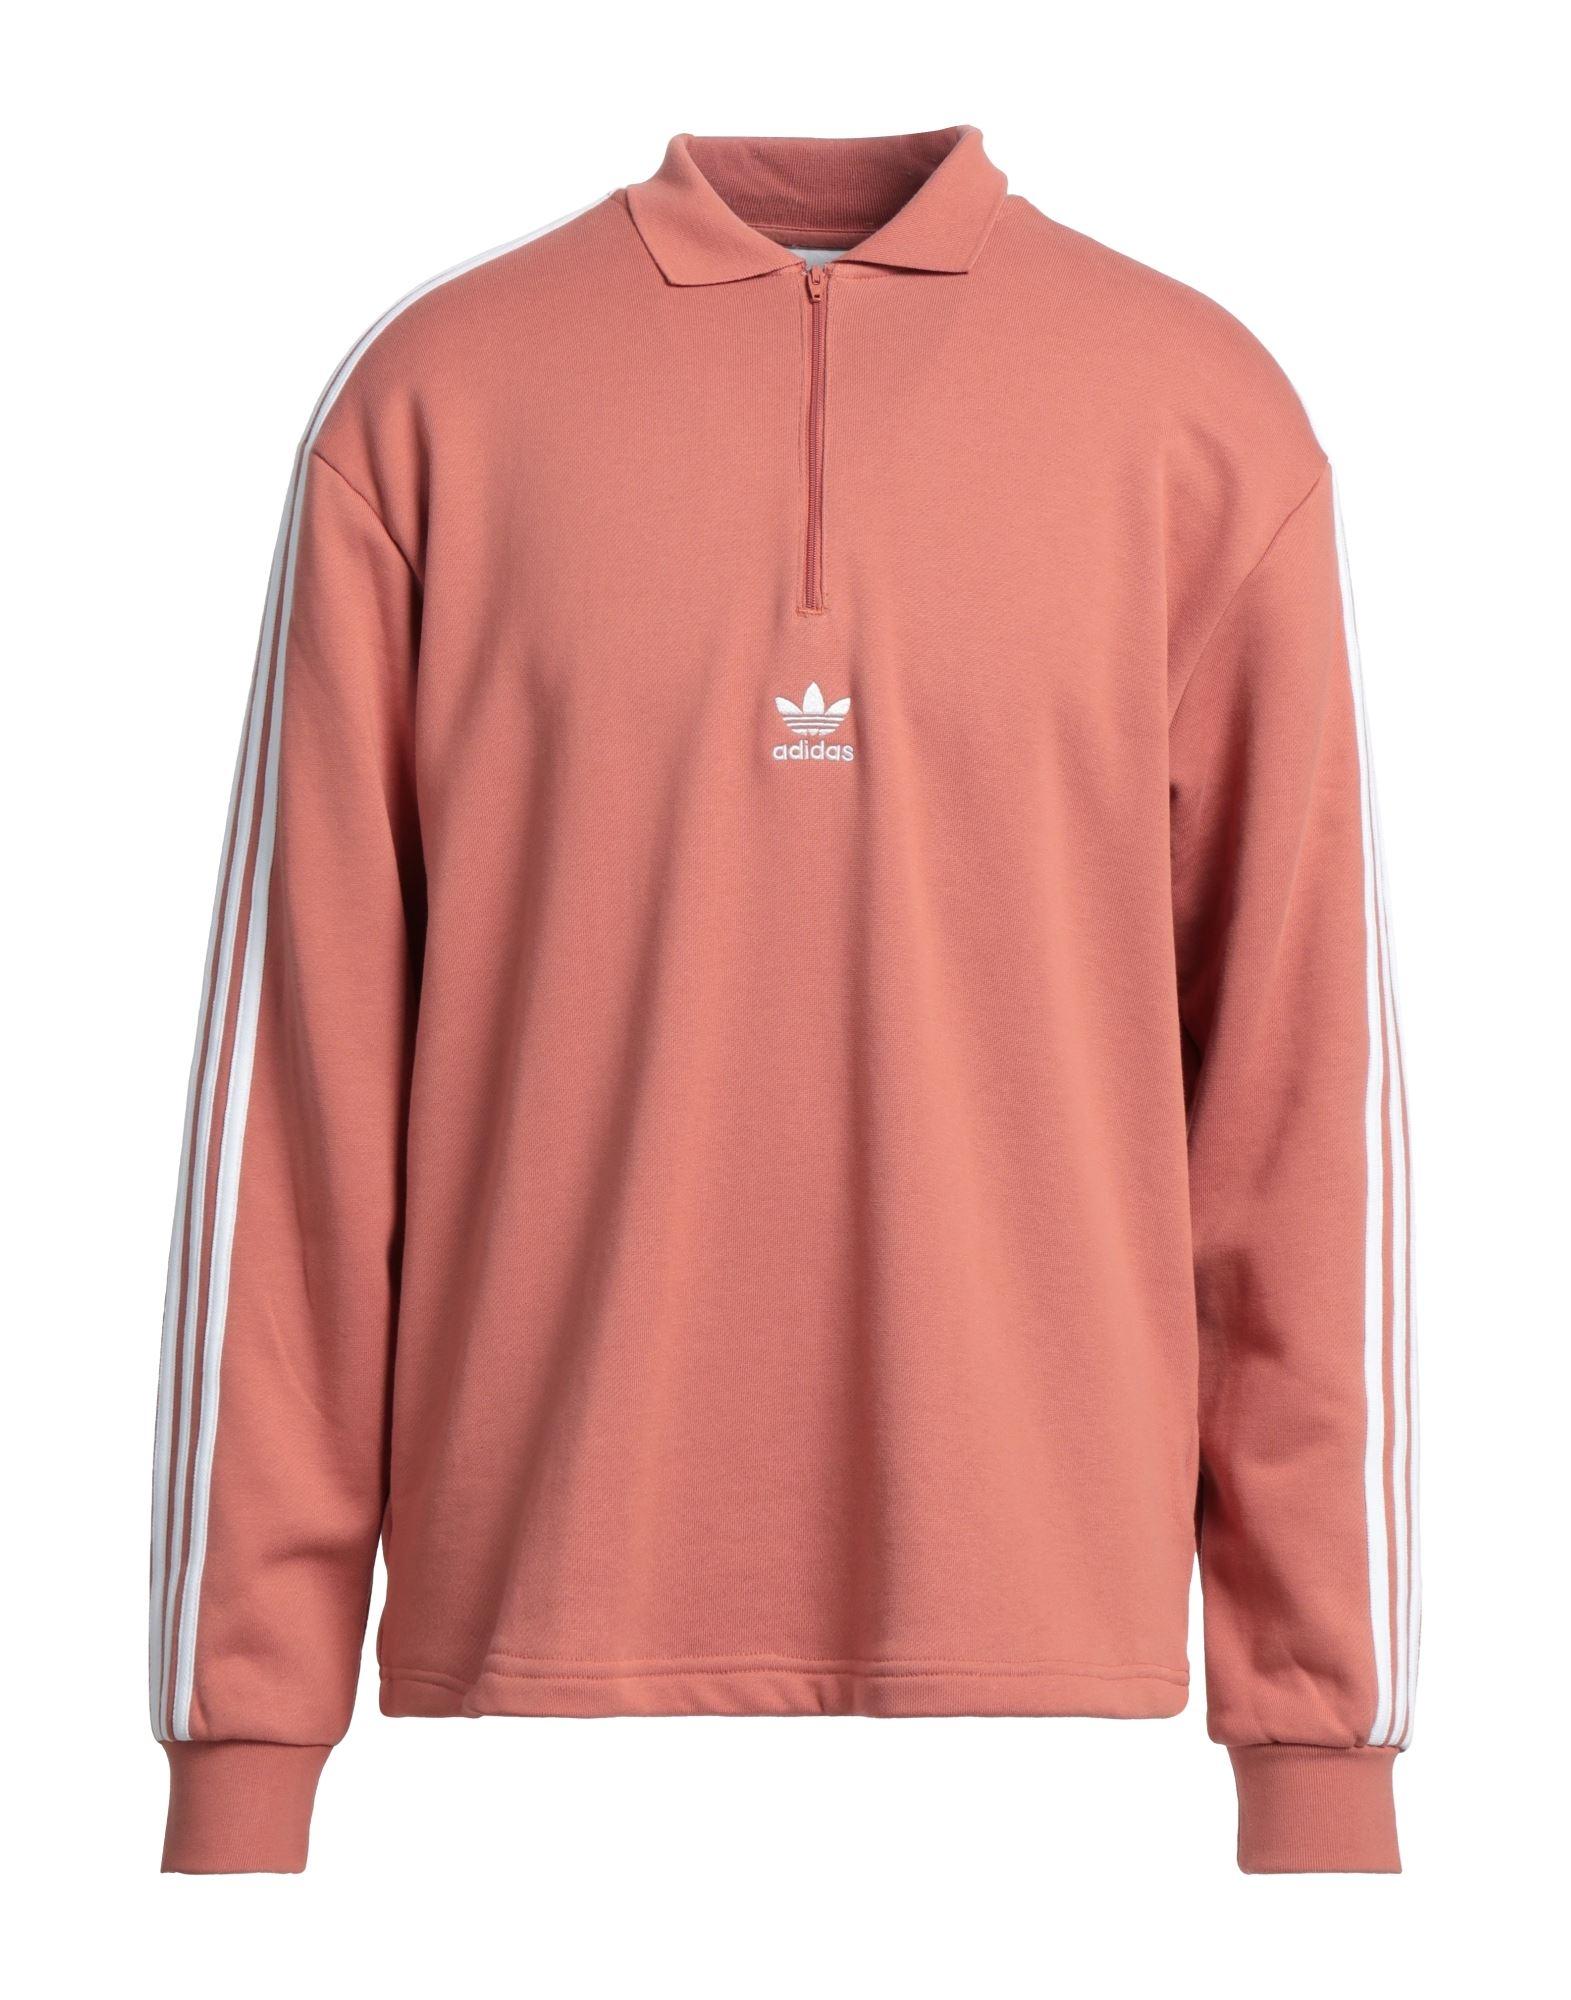 adidas Originals Sweatshirt in Pink for Men | Lyst